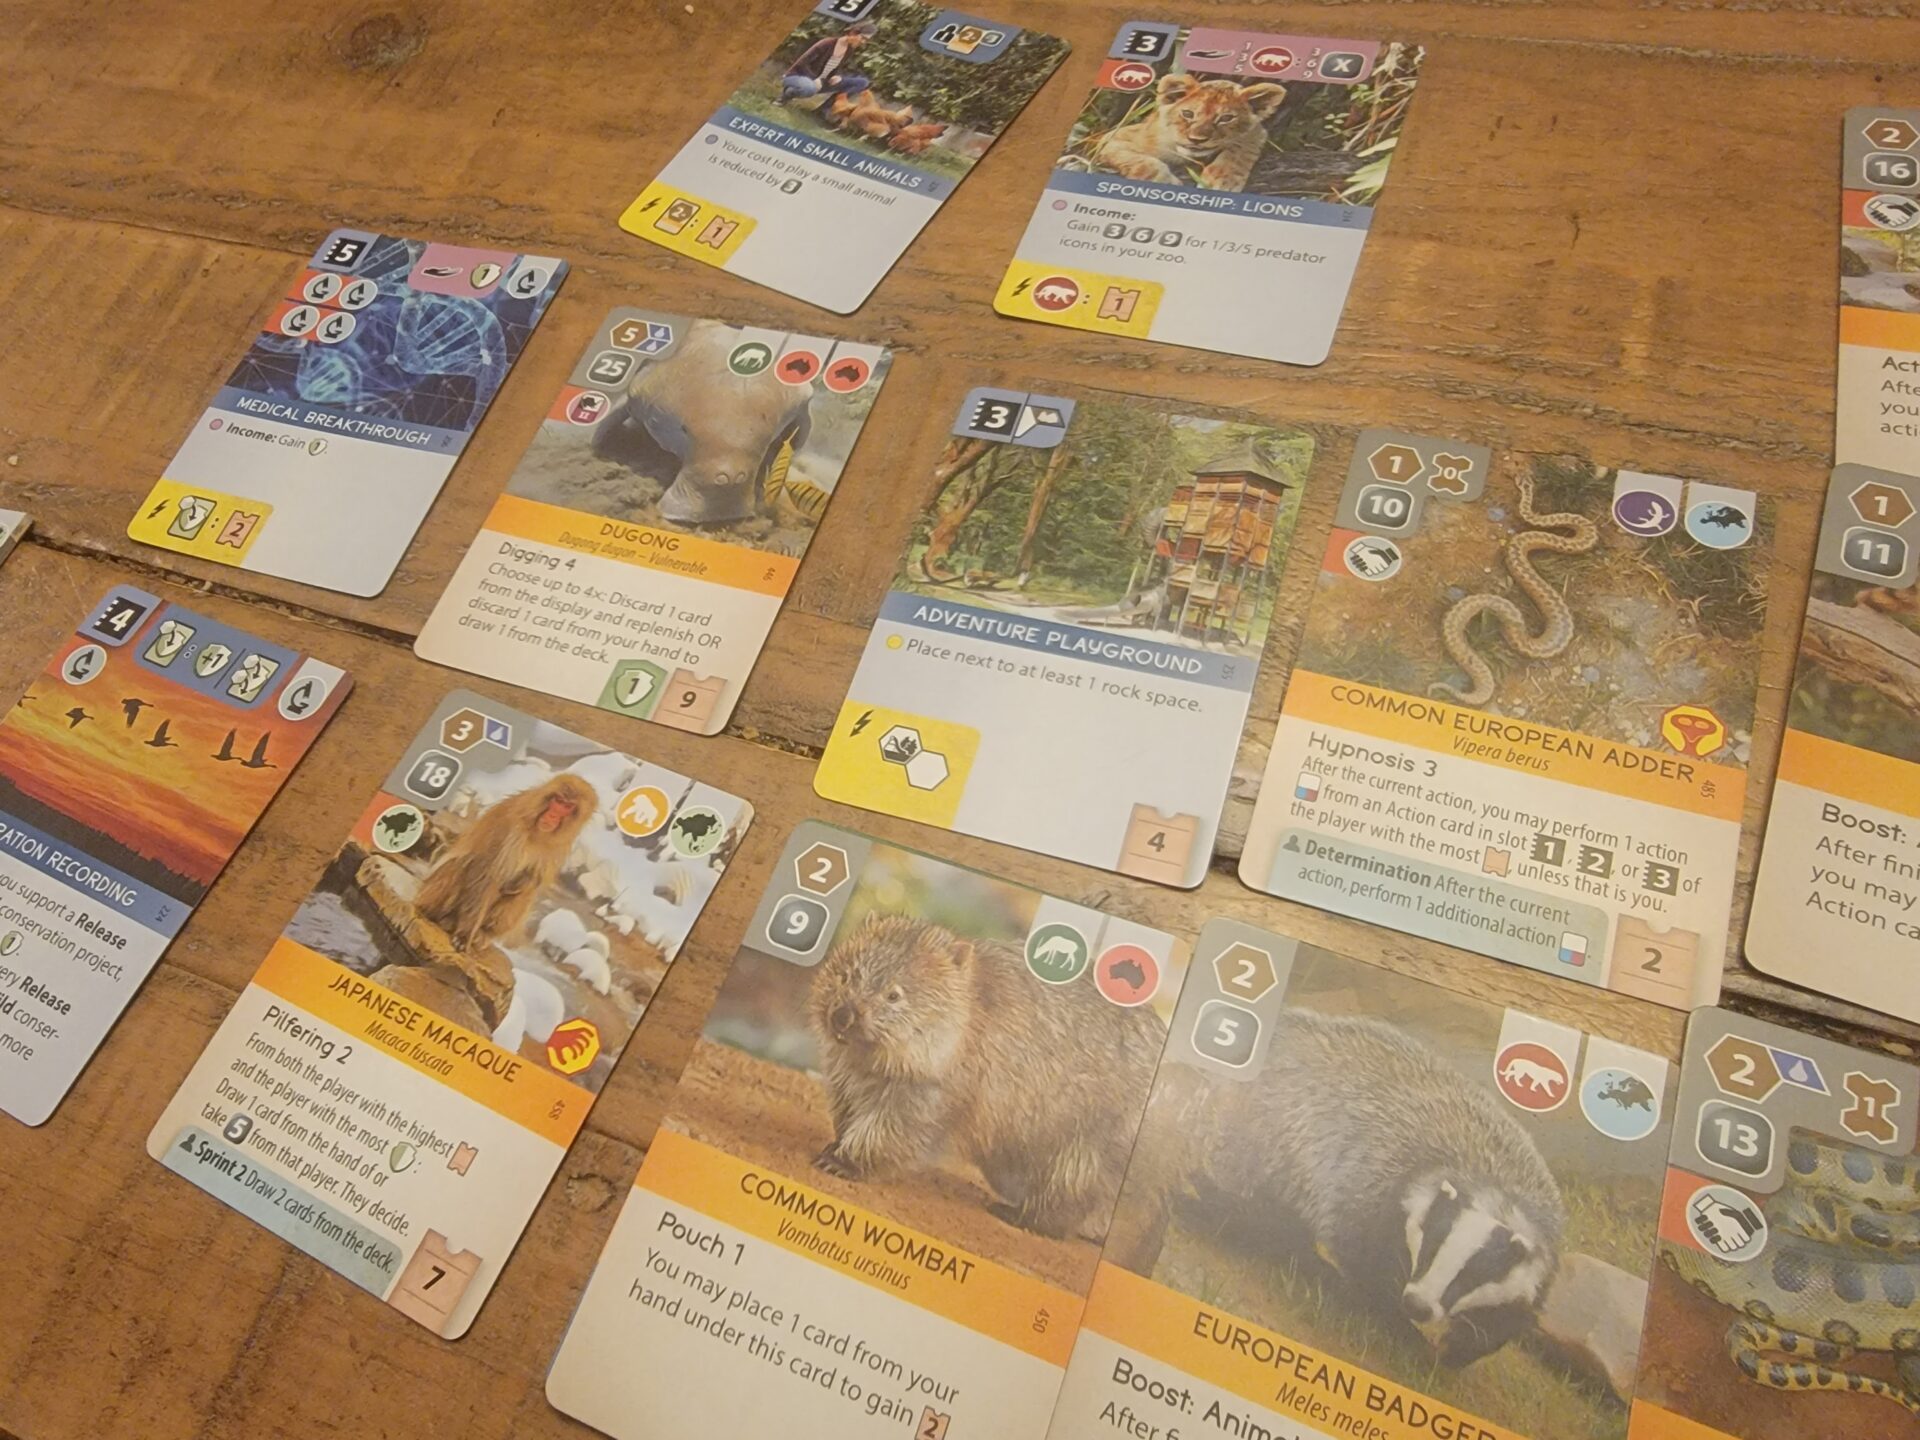 Ark Nova Zoo Cards on table.